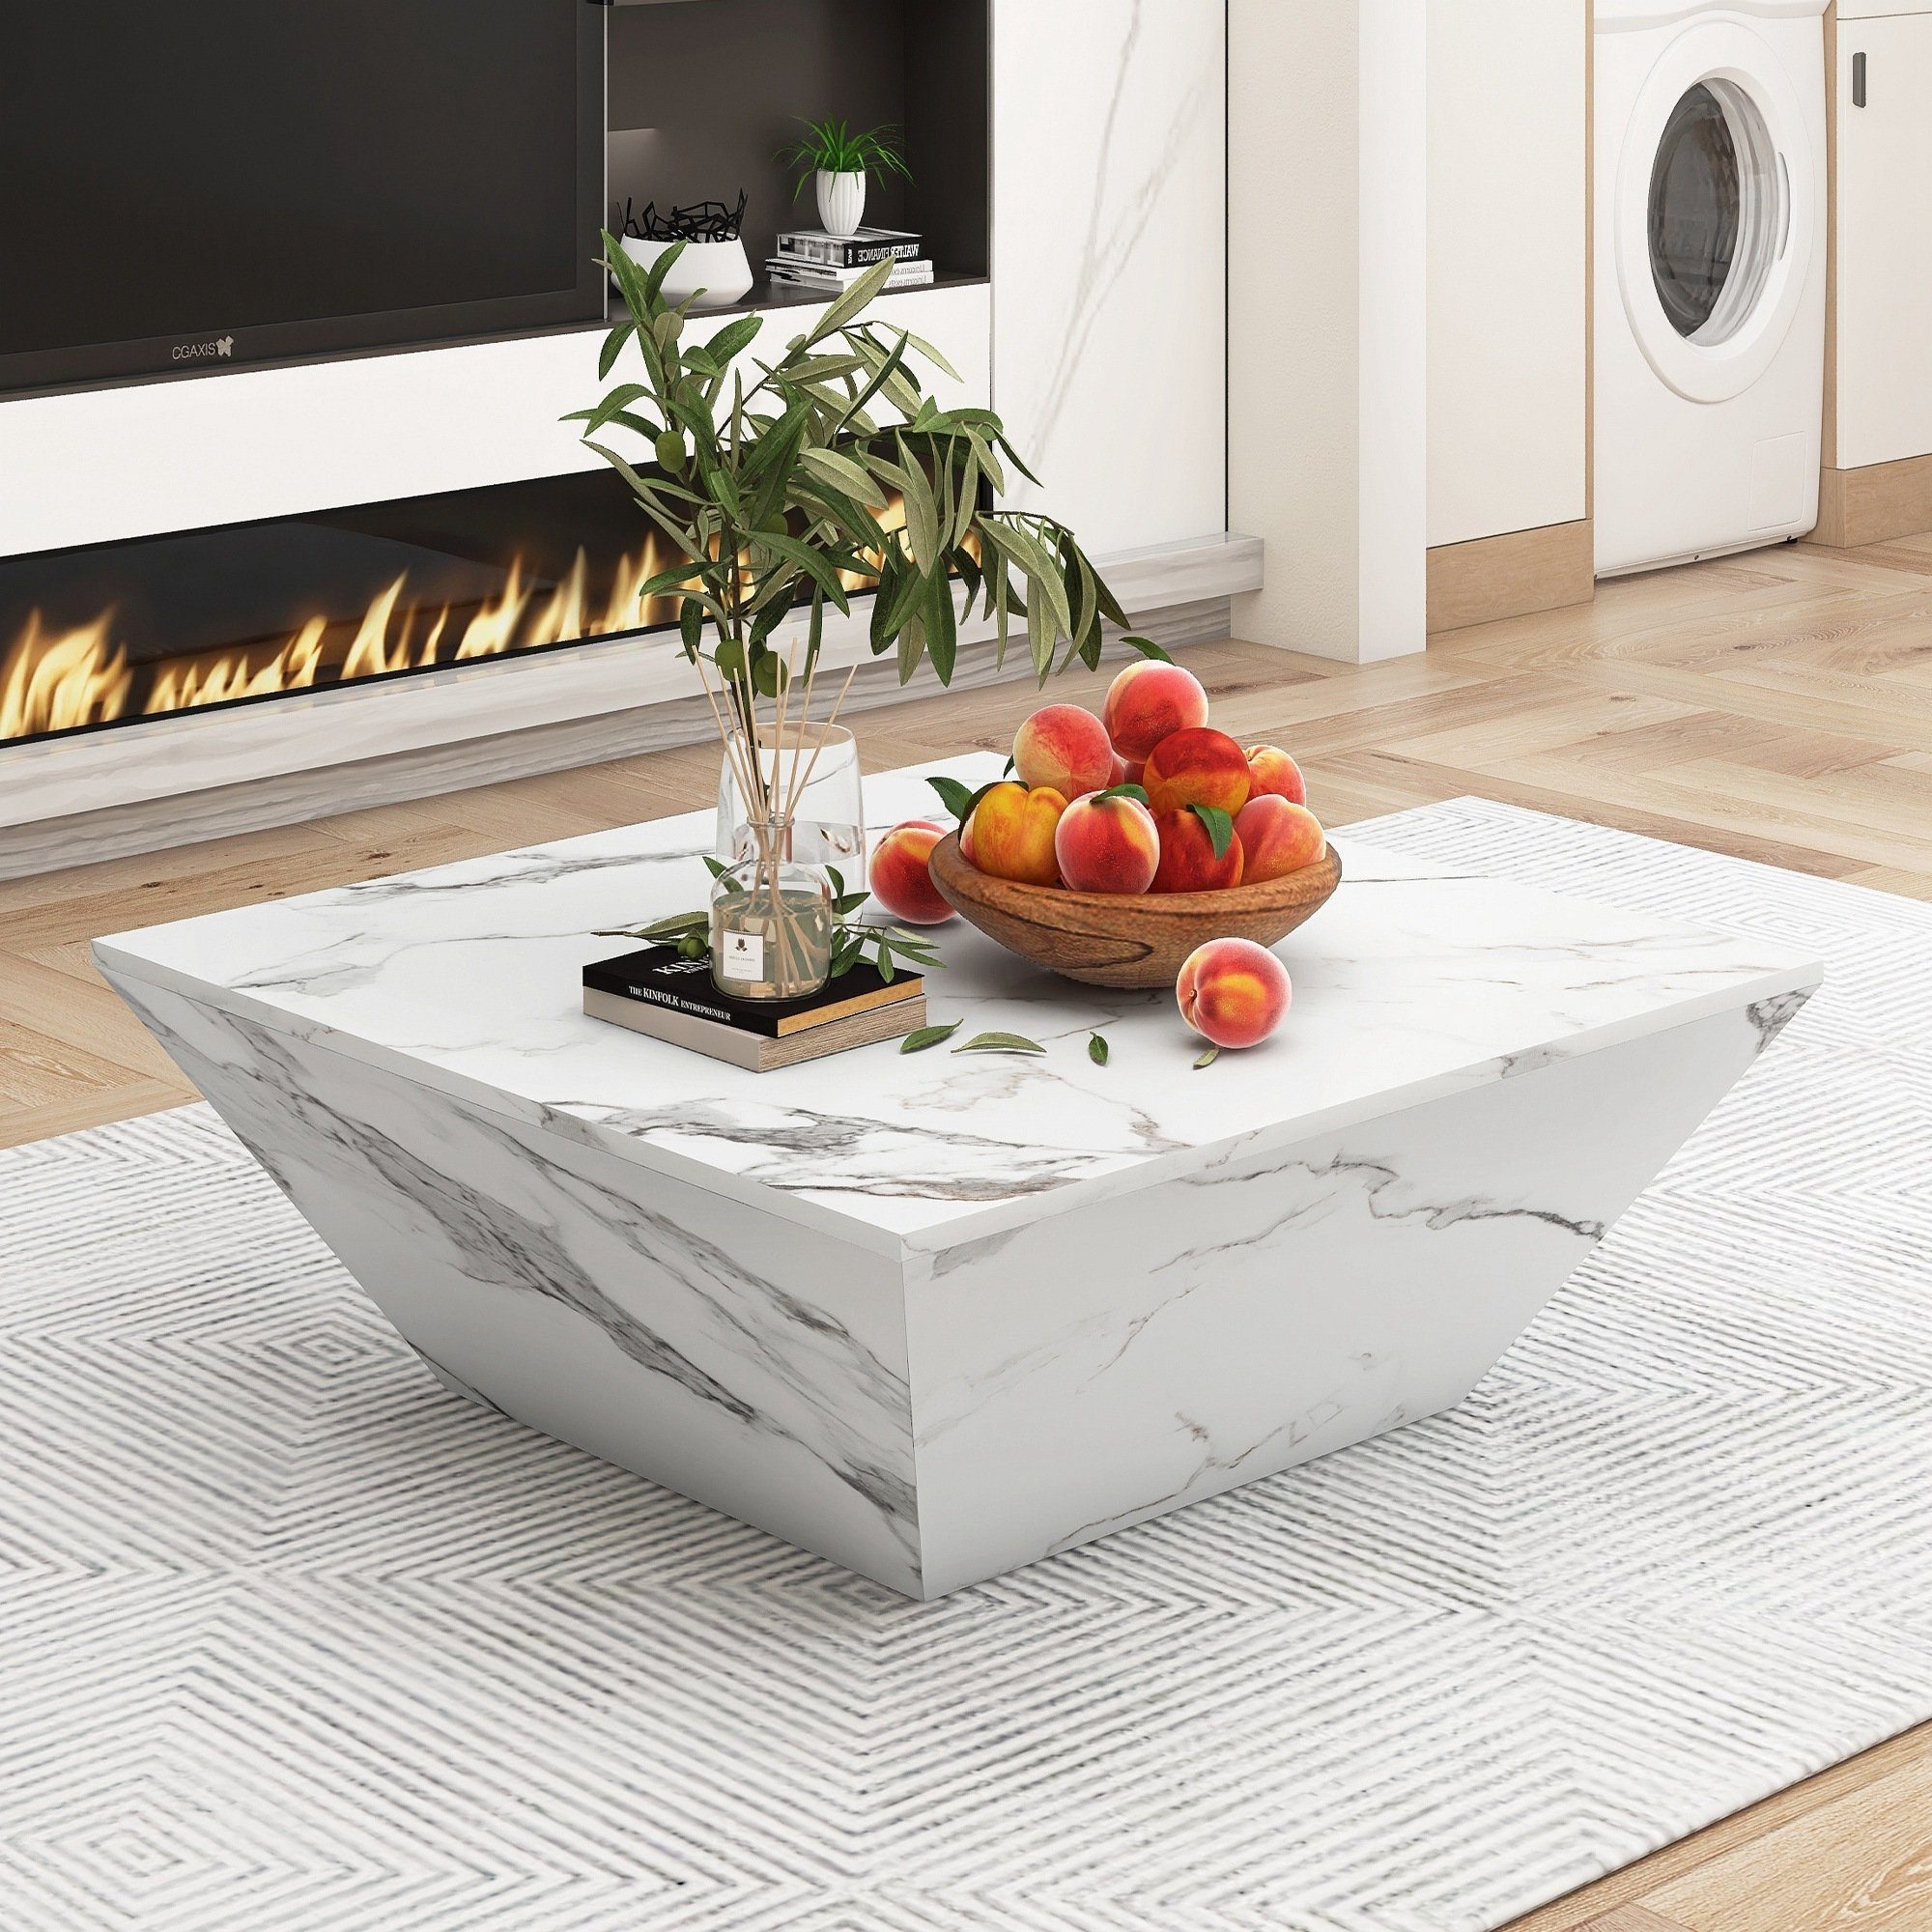 Celya Couchtisch Hochglanz Couchtisch, Wohnzimmer Tisch, 2 Schubladen,weiß, Moderner Hochglänzende Oberfläche,70×70×37cm( T×B×H)